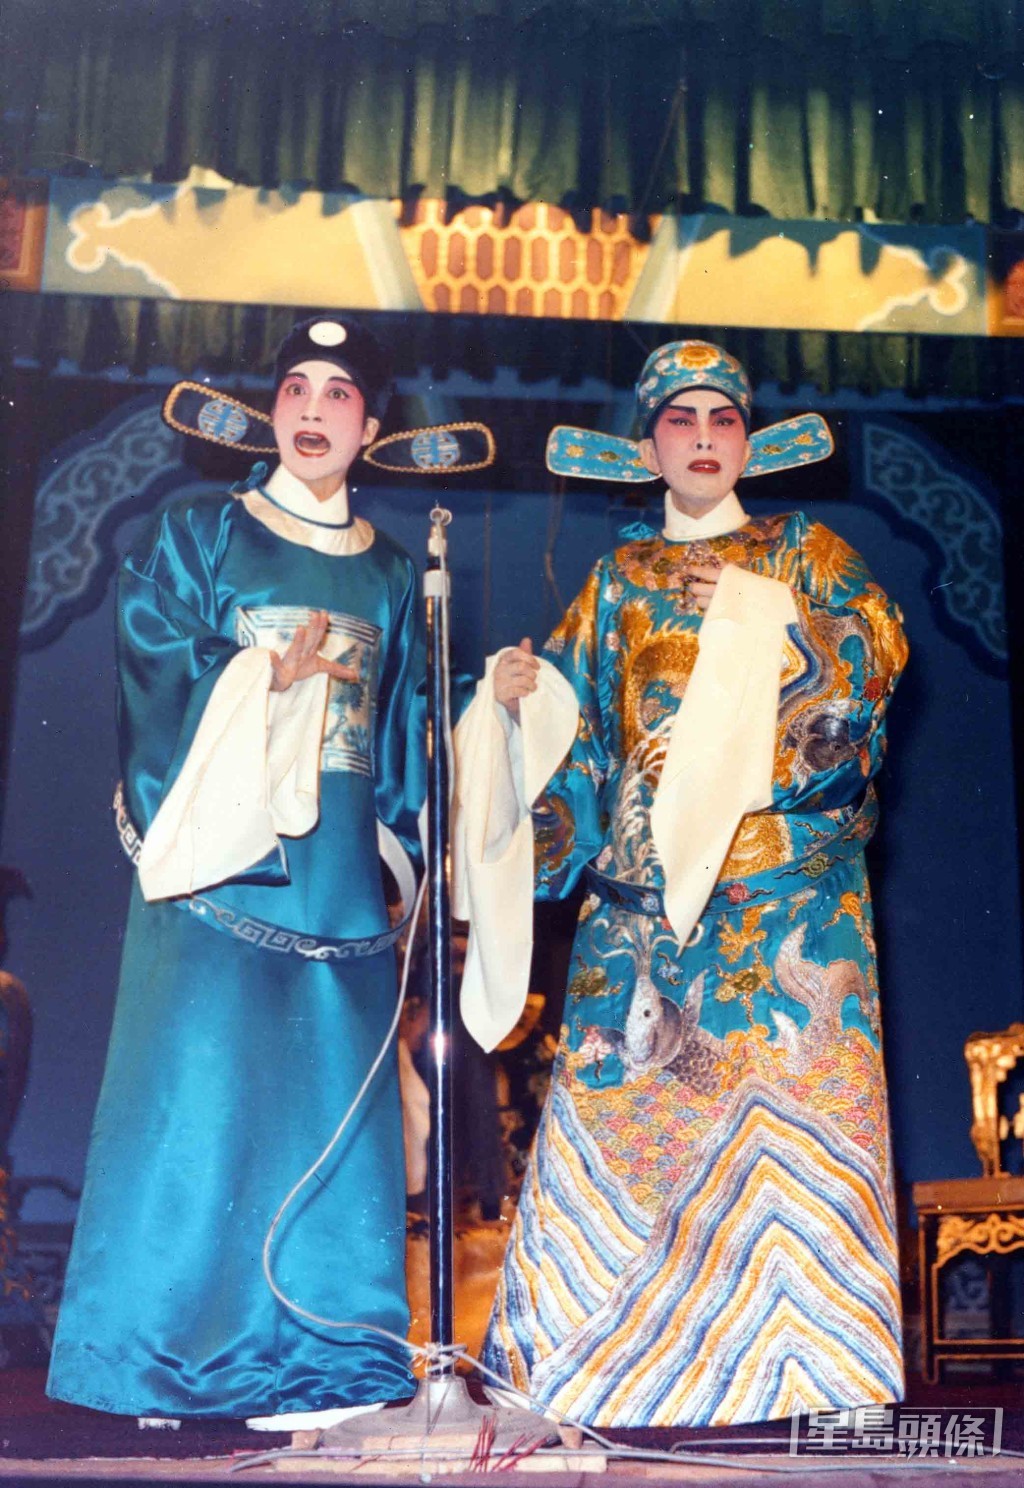 龍劍笙與恩師任劍輝於1969年合演粵劇《紫釵記》。